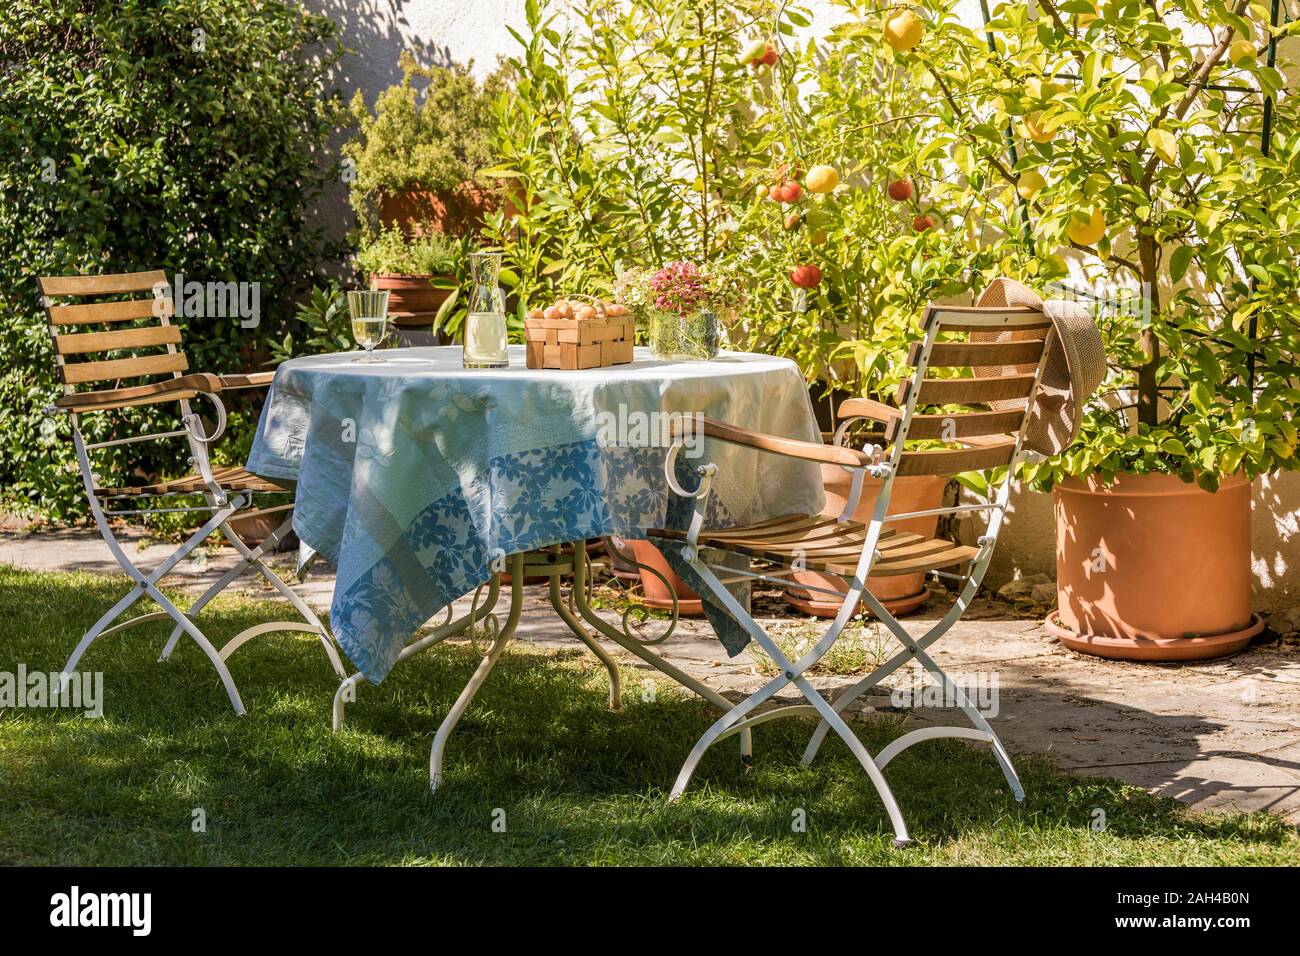 Germania, Baden-Württemberg, Stoccarda, tavolo in giardino residenziale nella parte anteriore dei vasi di limoni e pomodori Foto Stock